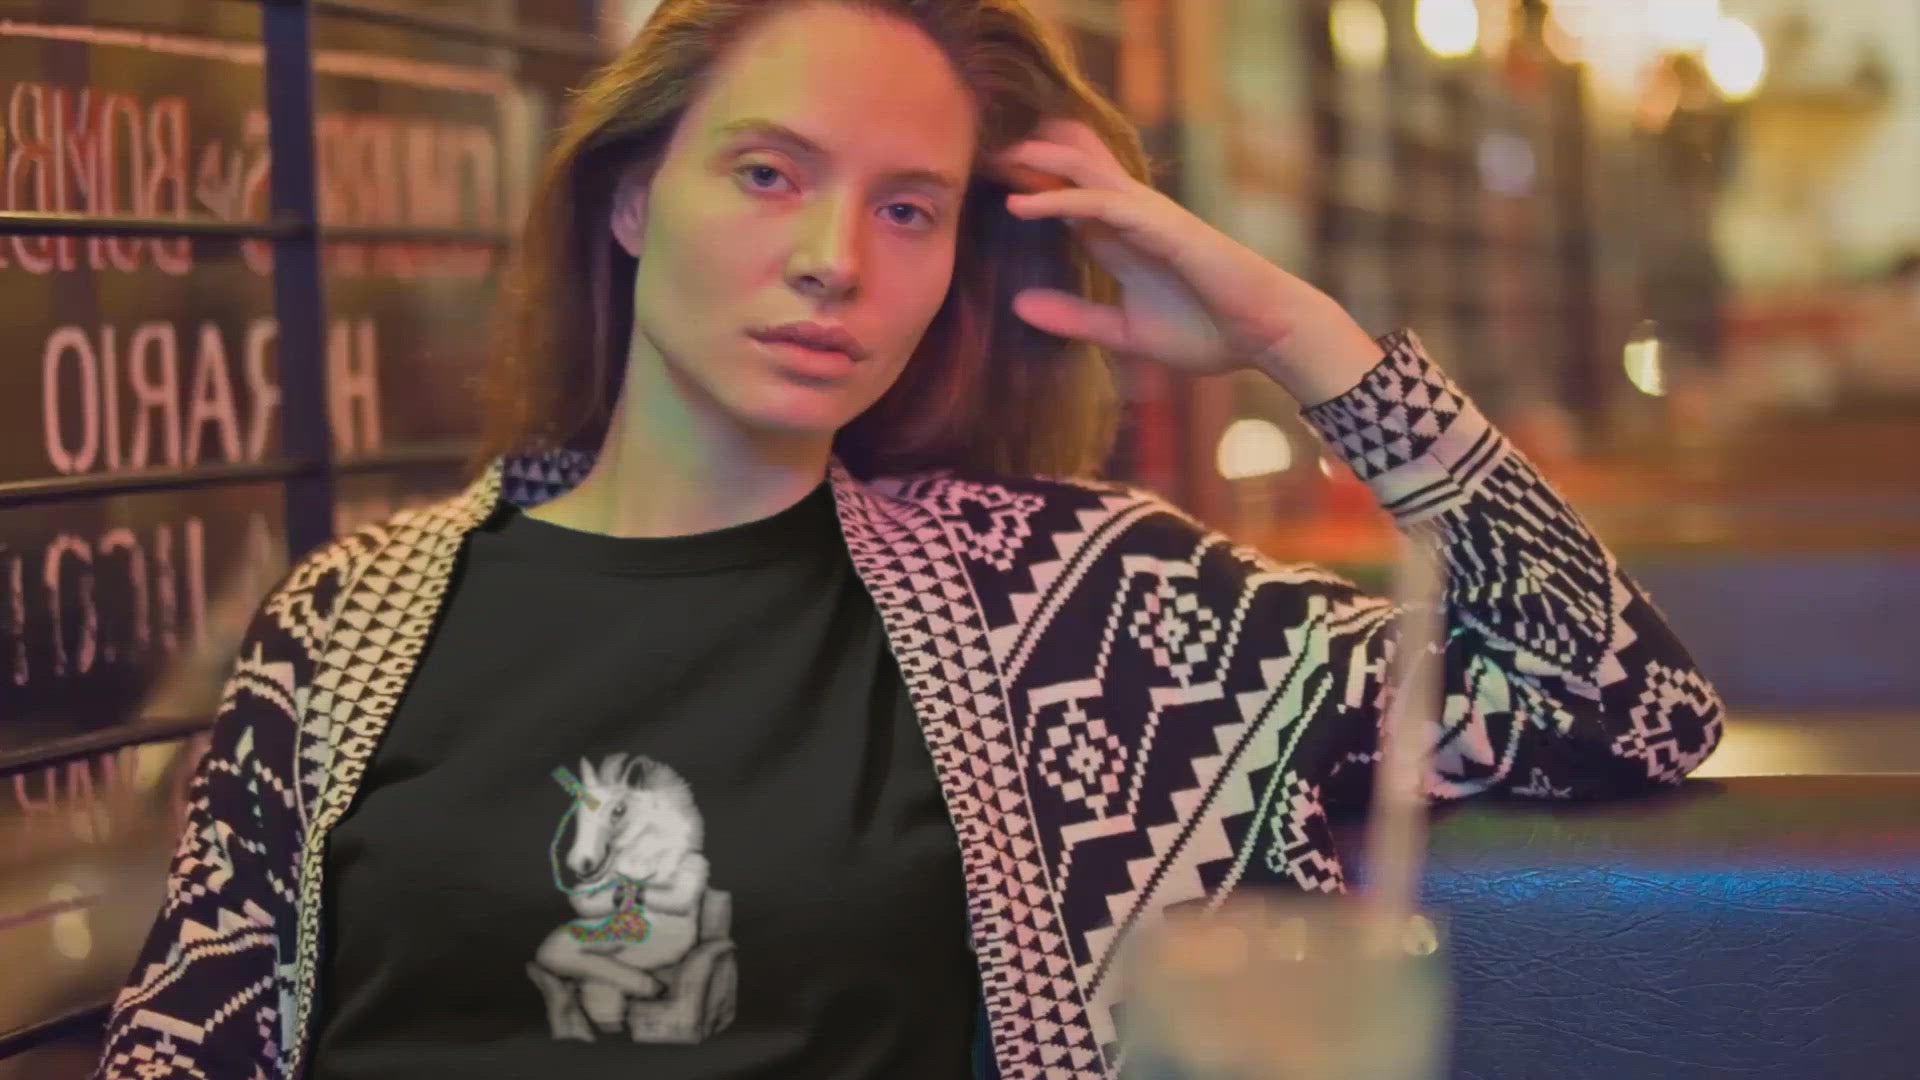 Knitting Unicorn | Women's 100% Organic Cotton T Shirt worn by a woman in a bar